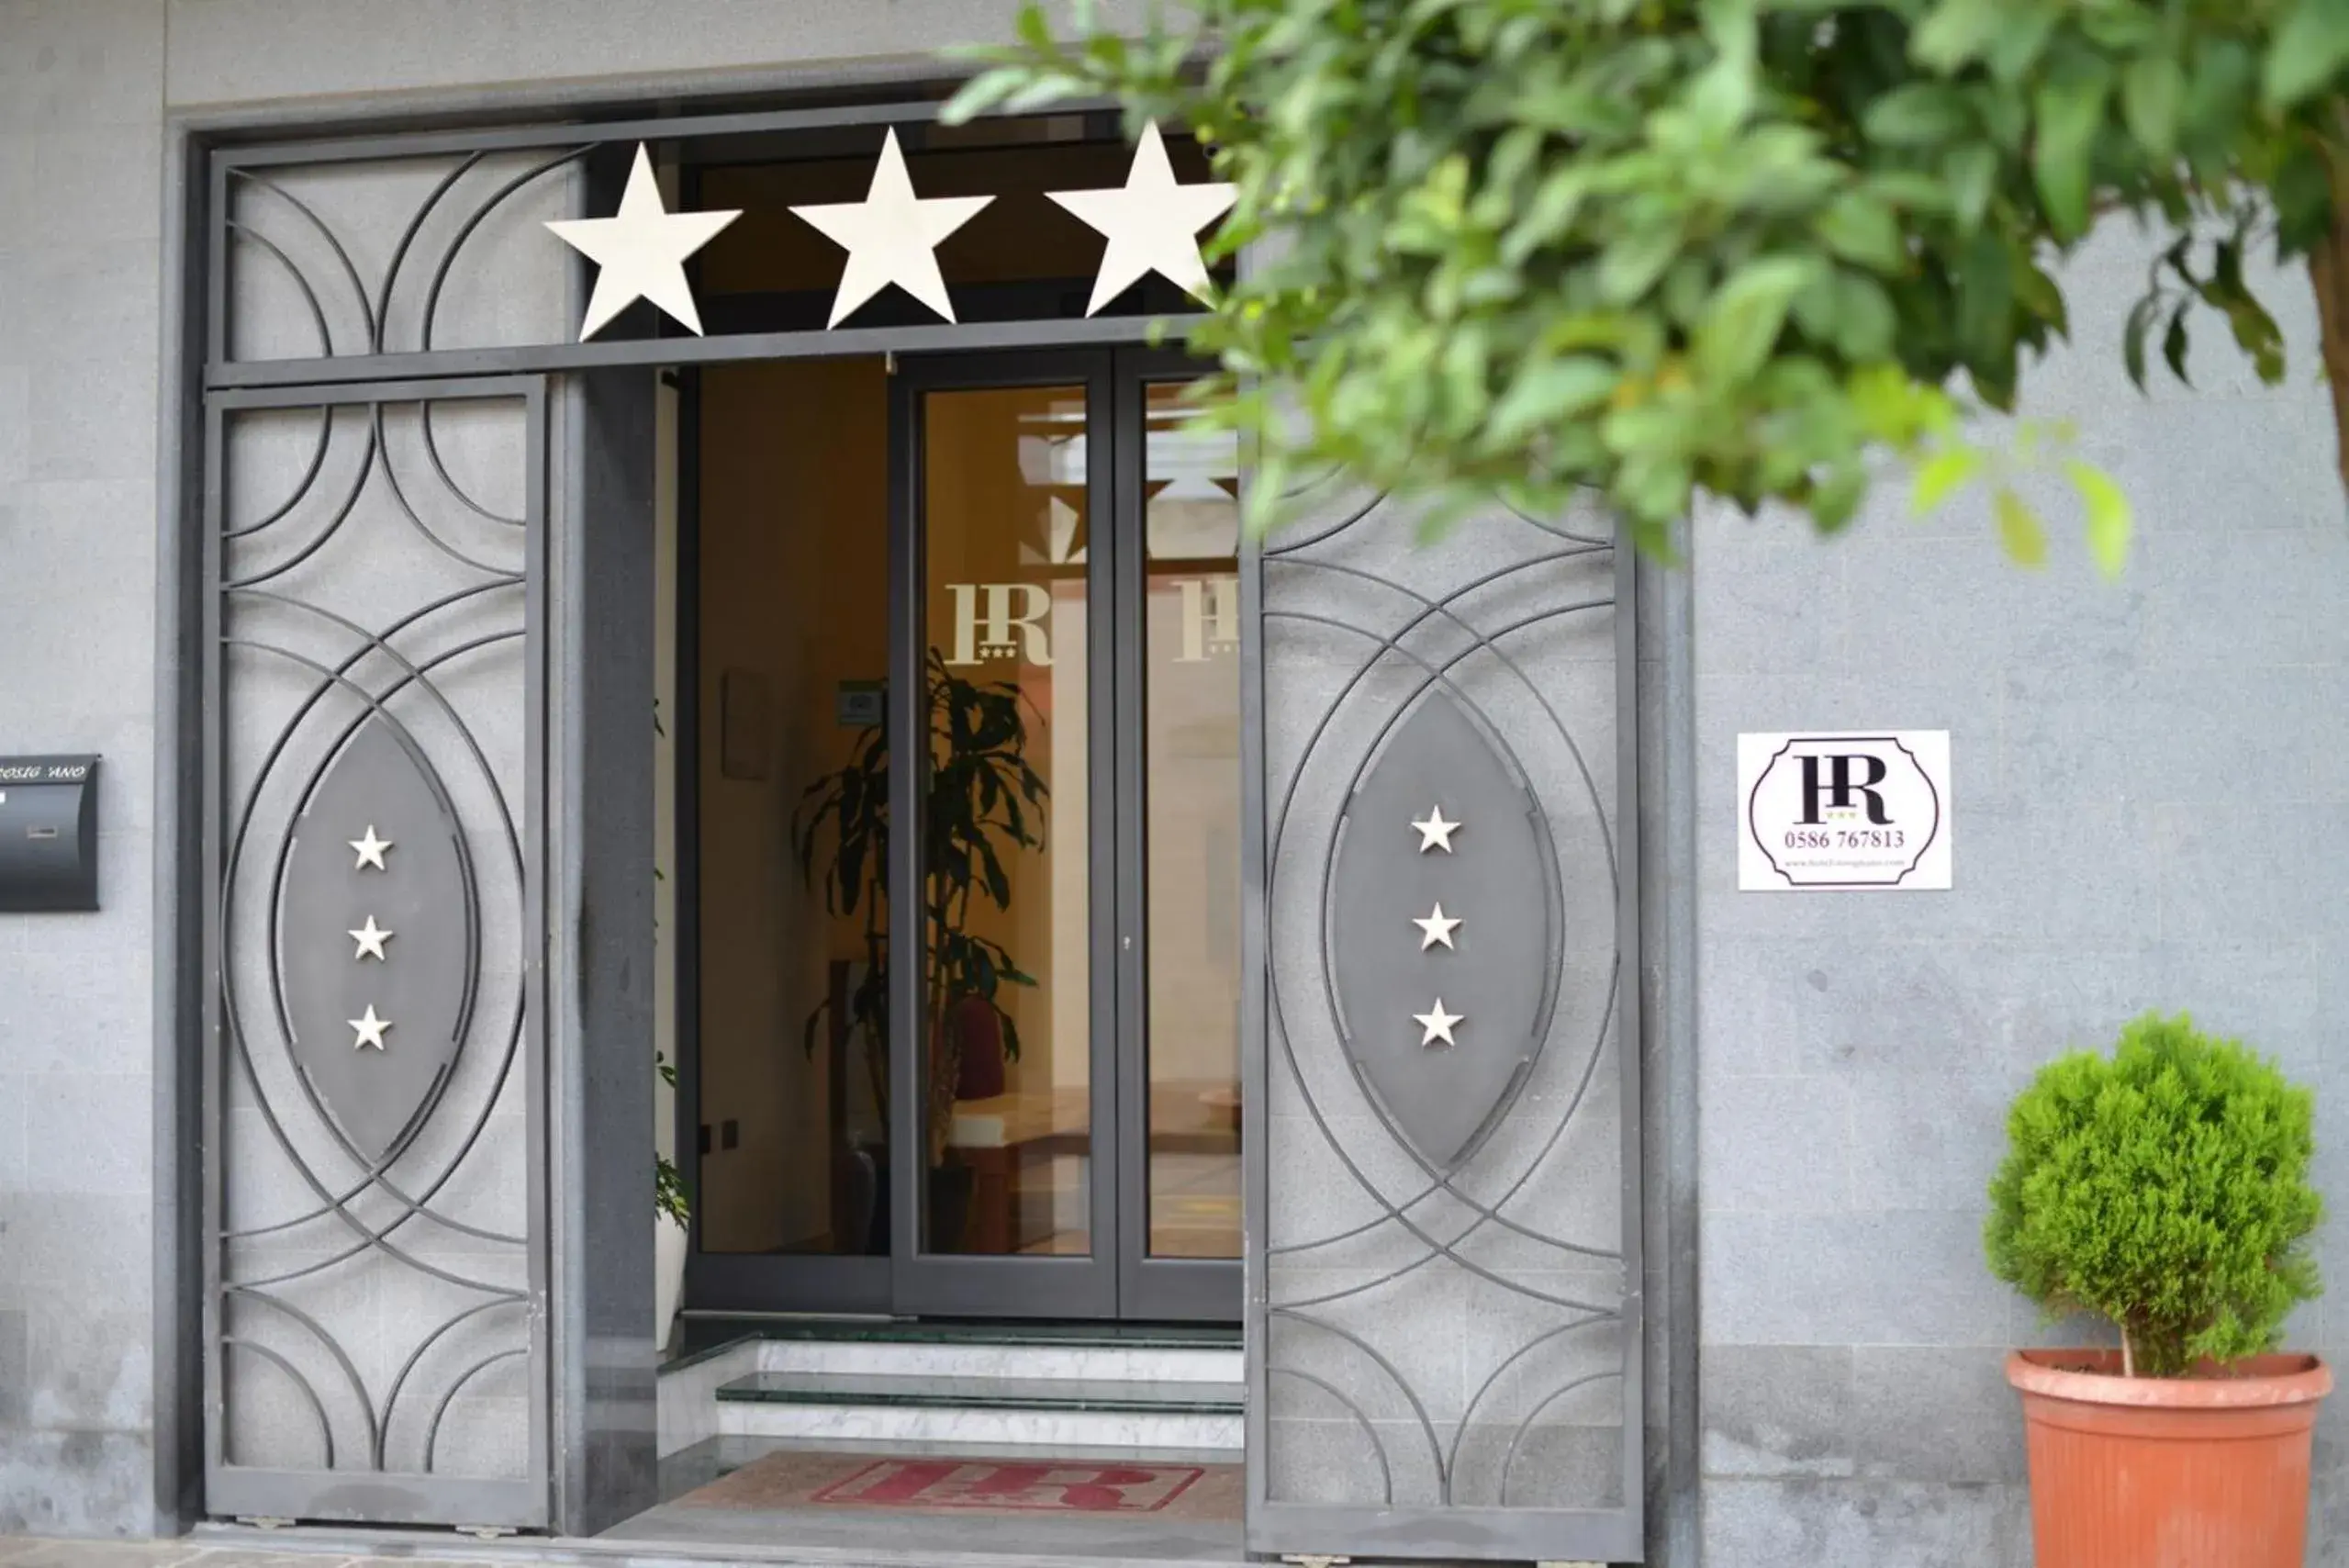 Facade/entrance in Hotel Rosignano